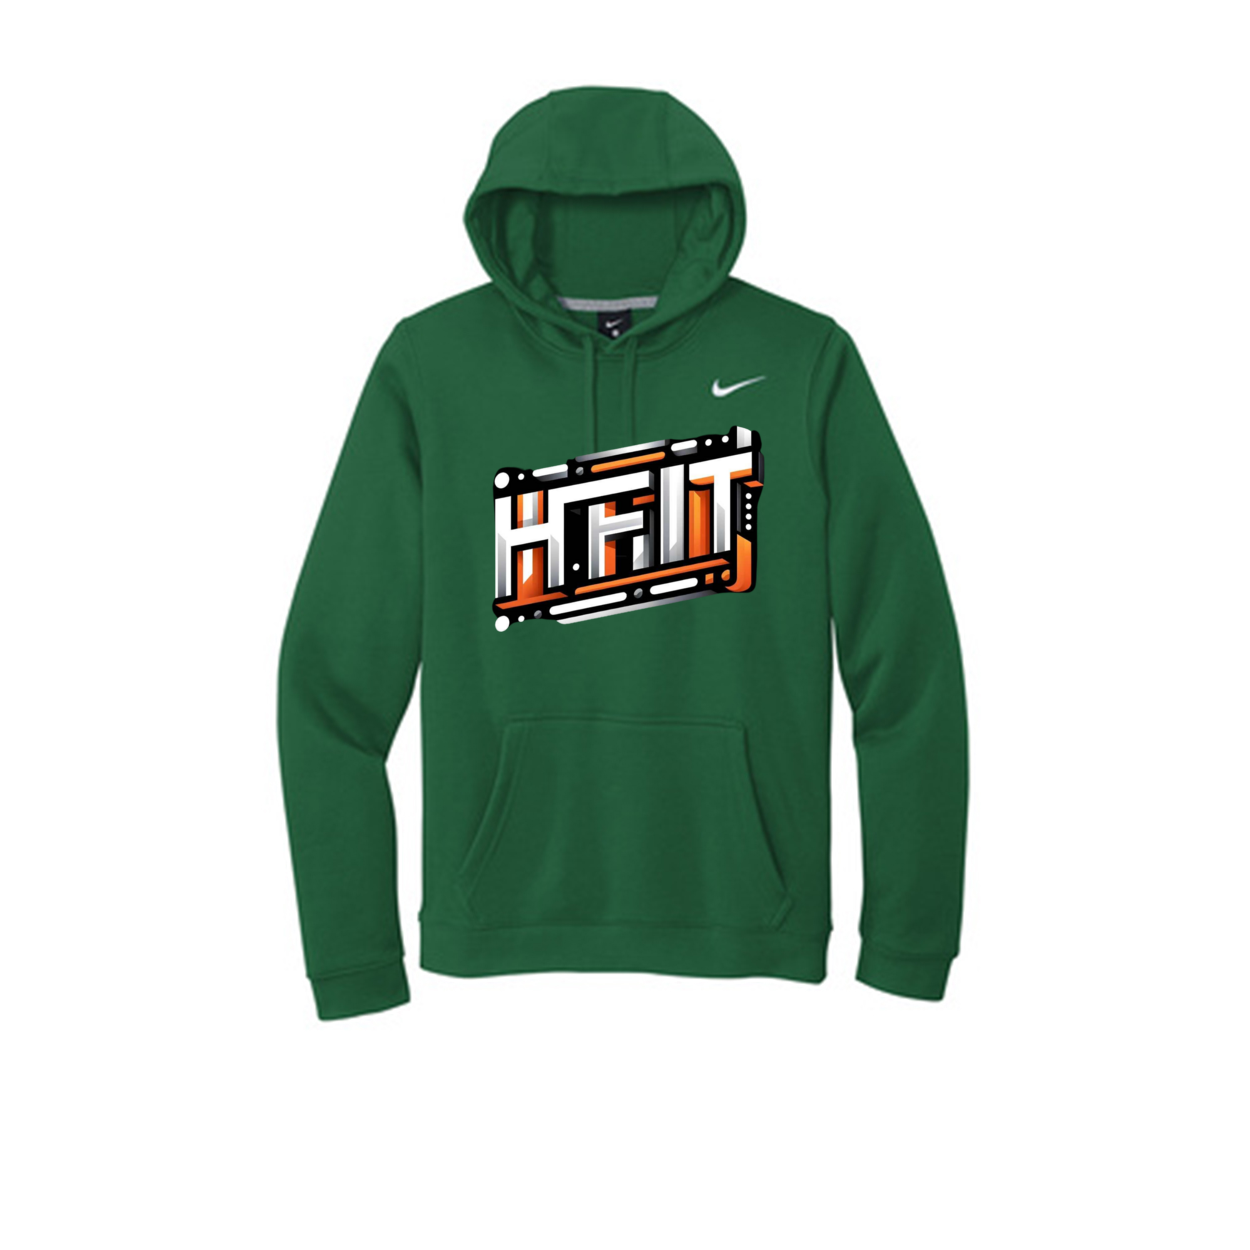 HFIT Nike Club Fleece Pullover Hoodie Top